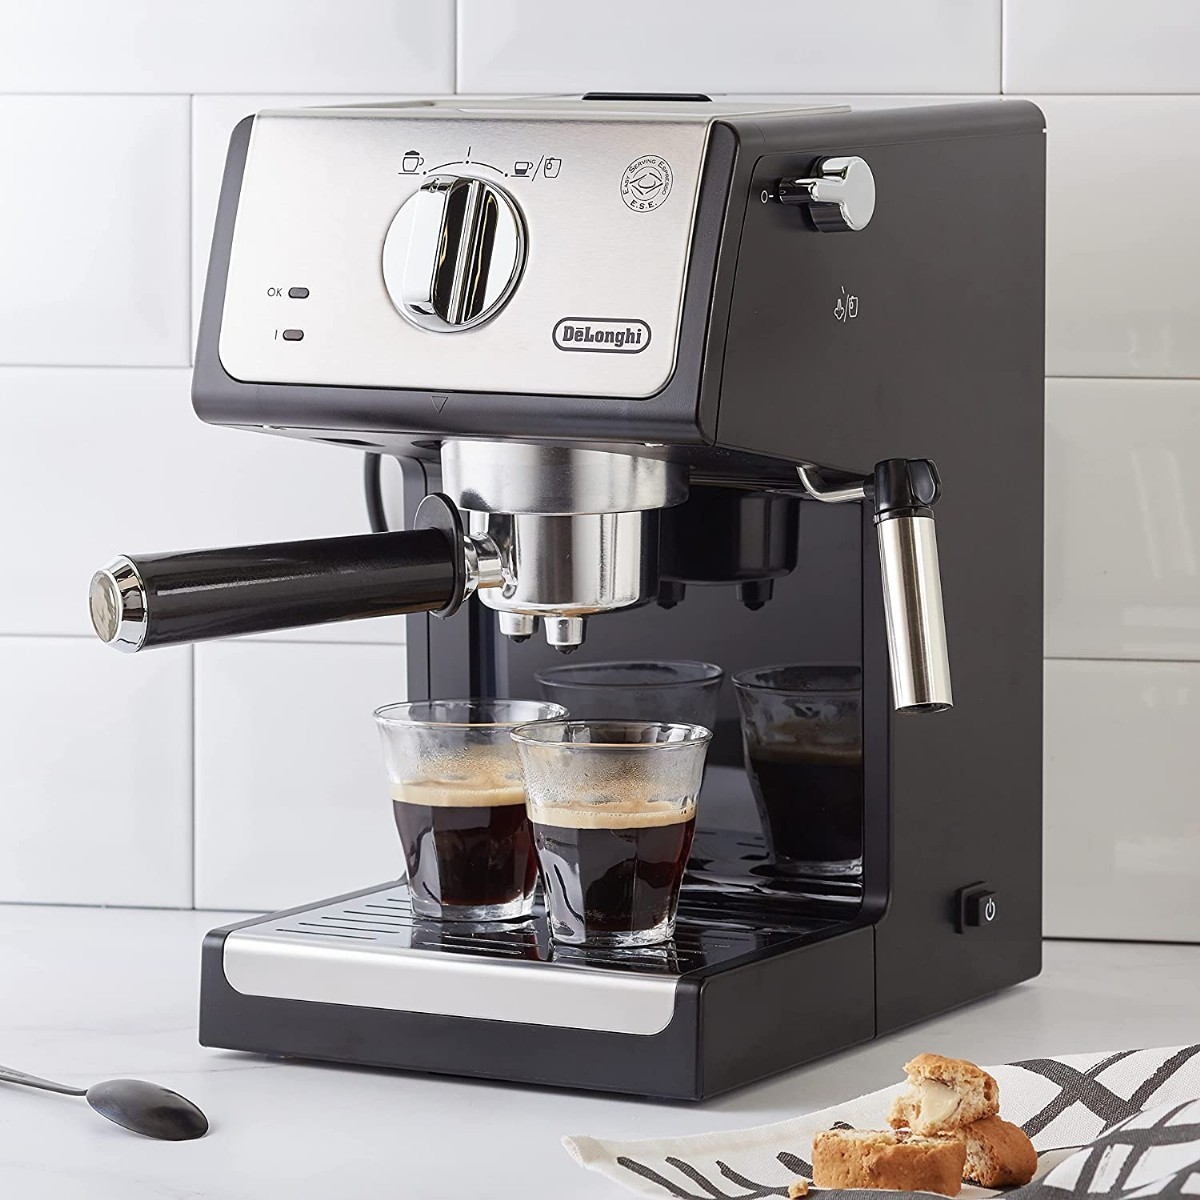 Espresso & Cappuccino Makinesi | Delonghi Activeline ECP33.21.BK Espresso ve Cappucino Makinesi | ECP 33.21.BK | Delonghi Actıvelıne ECP33.21.BK Espresso ve Cappucino Makinesi | 